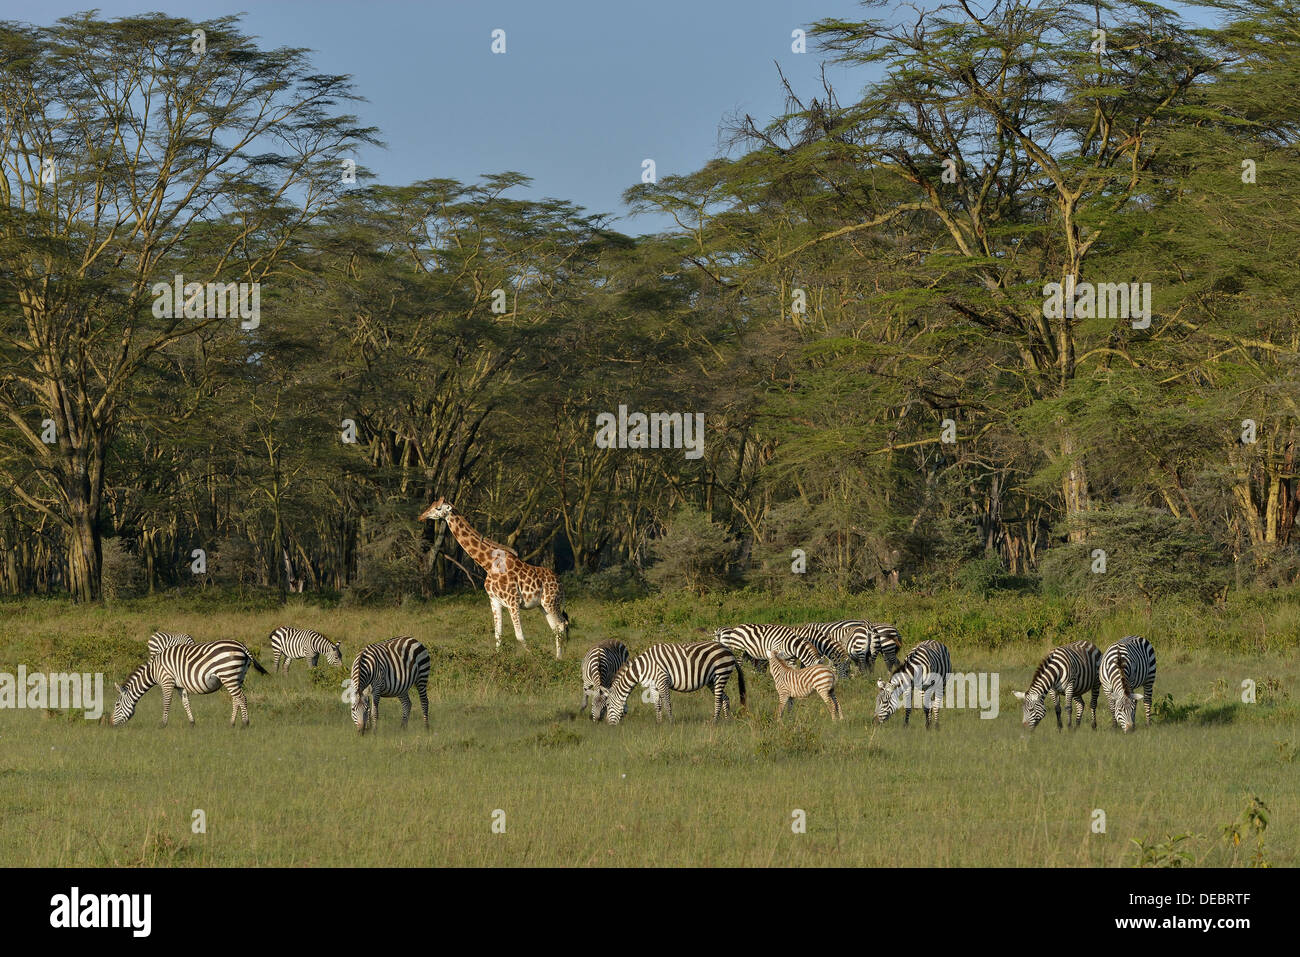 Girafe Rothschild ougandais ou Girafe (Giraffa camelopardalis rothschildi) et Grant's zèbres (Equus quagga boehmi) Banque D'Images